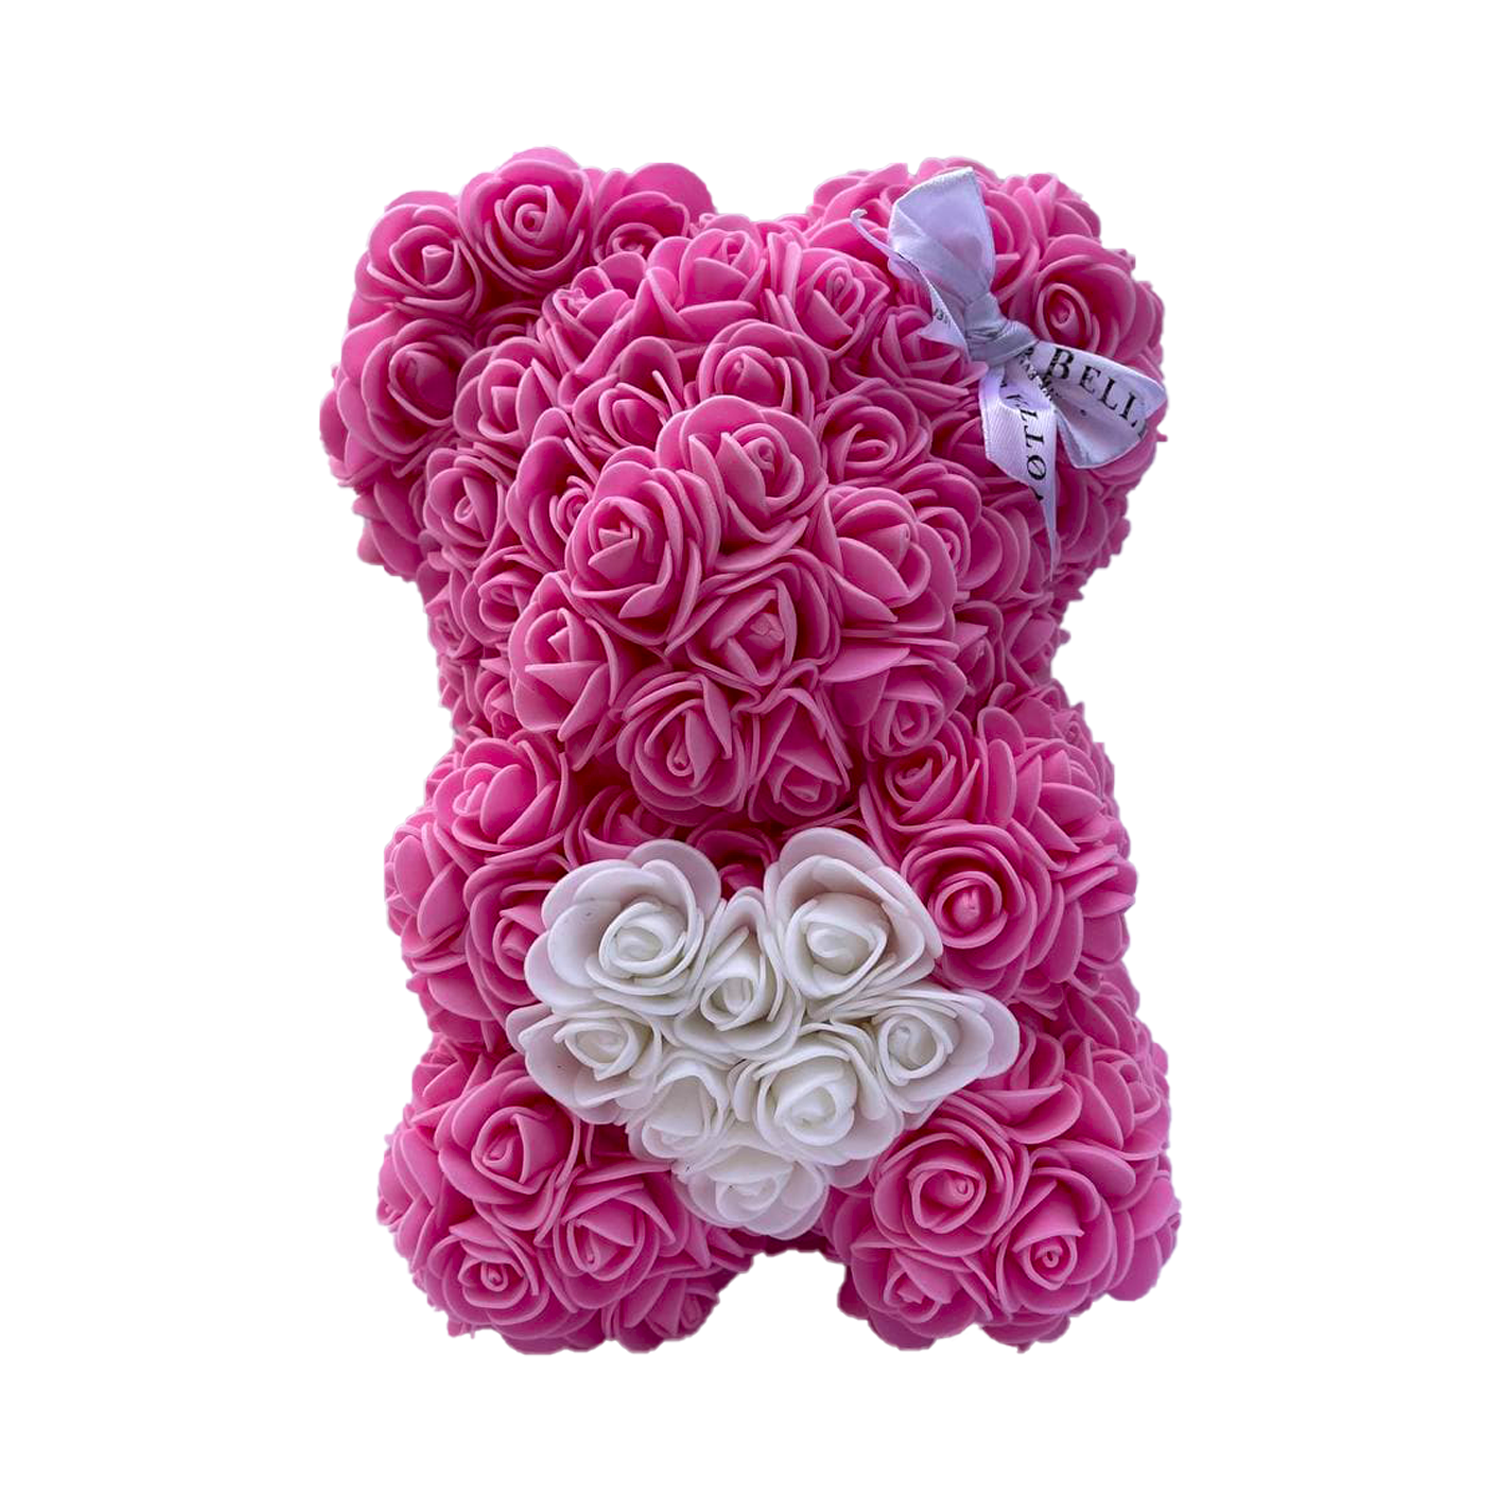 Rosa Bären aus den Rosen mit einem Herzchen - 25 сm